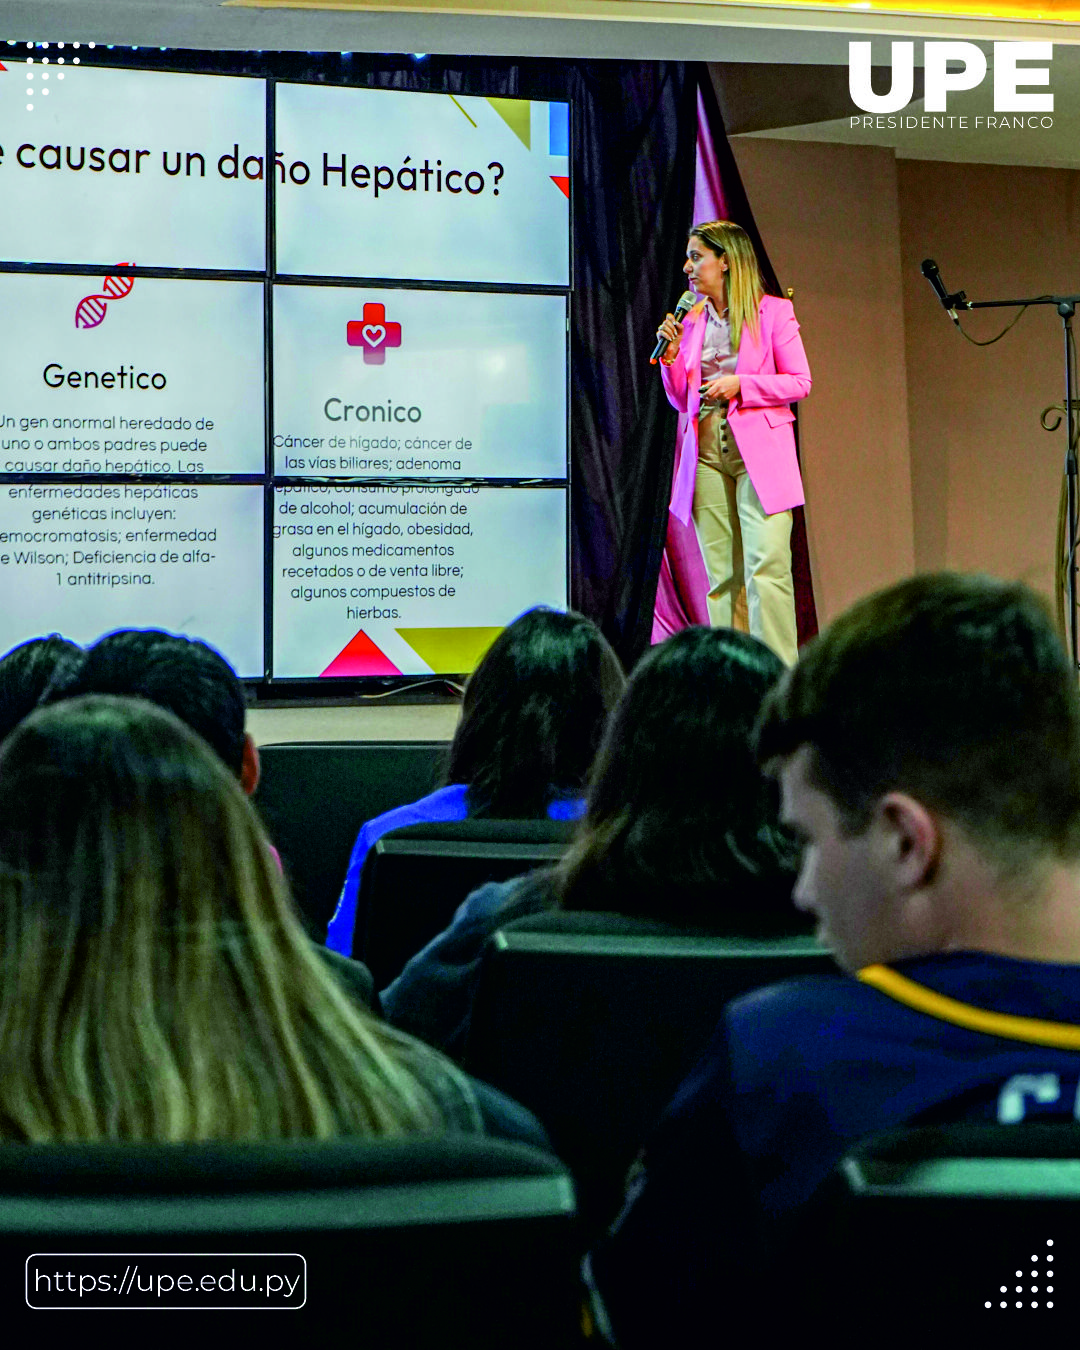 Taller sobre Hepatitis en la UPE: Compromiso con la Salud Pública